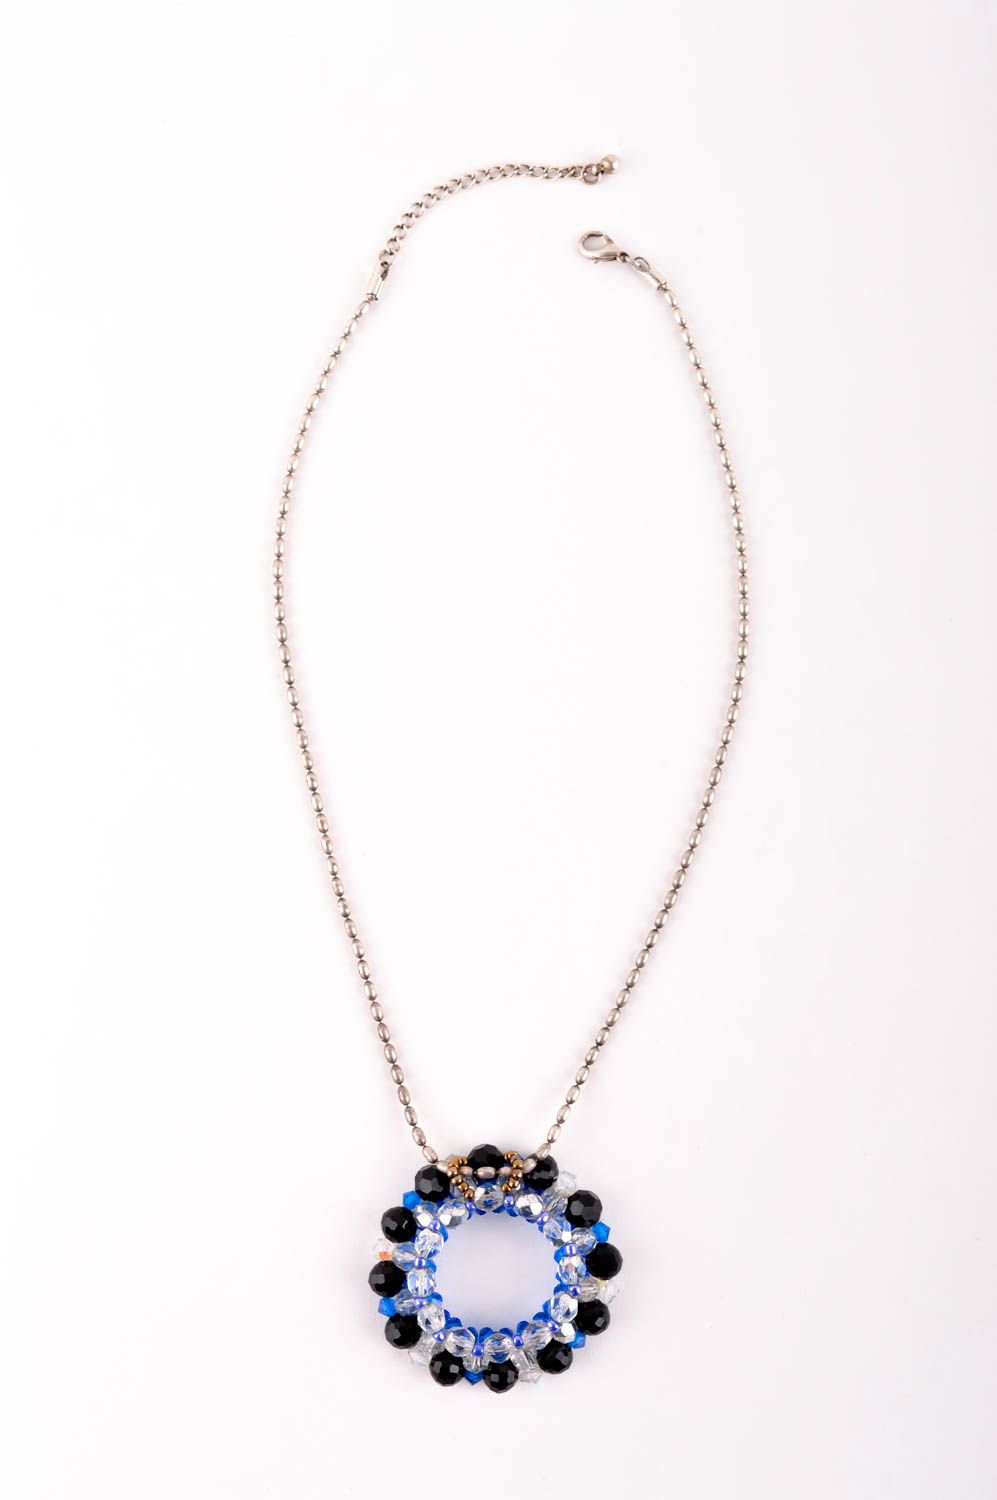 Handmade pendant designer pendant beaded pendant for women unusual gift photo 5